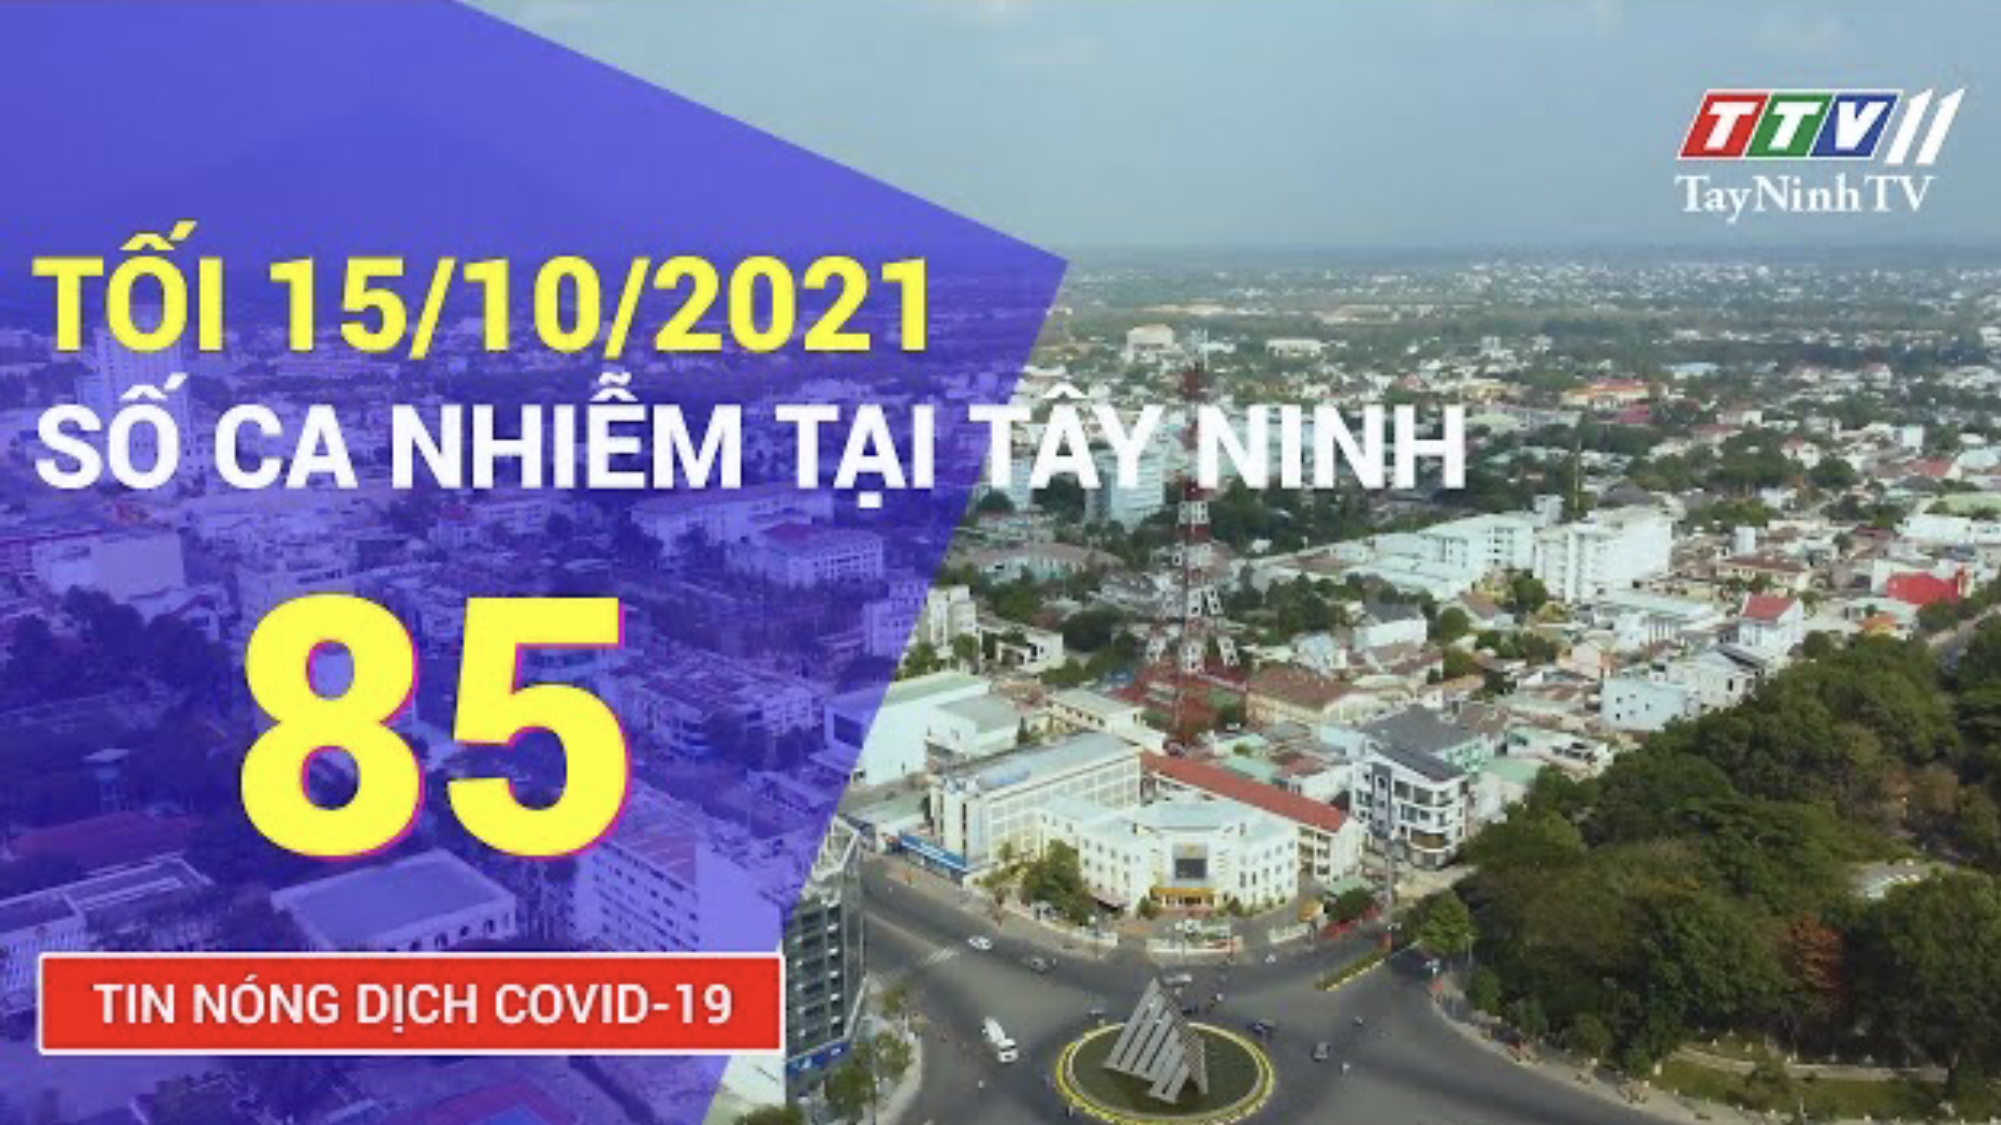 TIN TỨC COVID-19 TỐI 15/10/2021 | Tin tức hôm nay | TayNinhTV